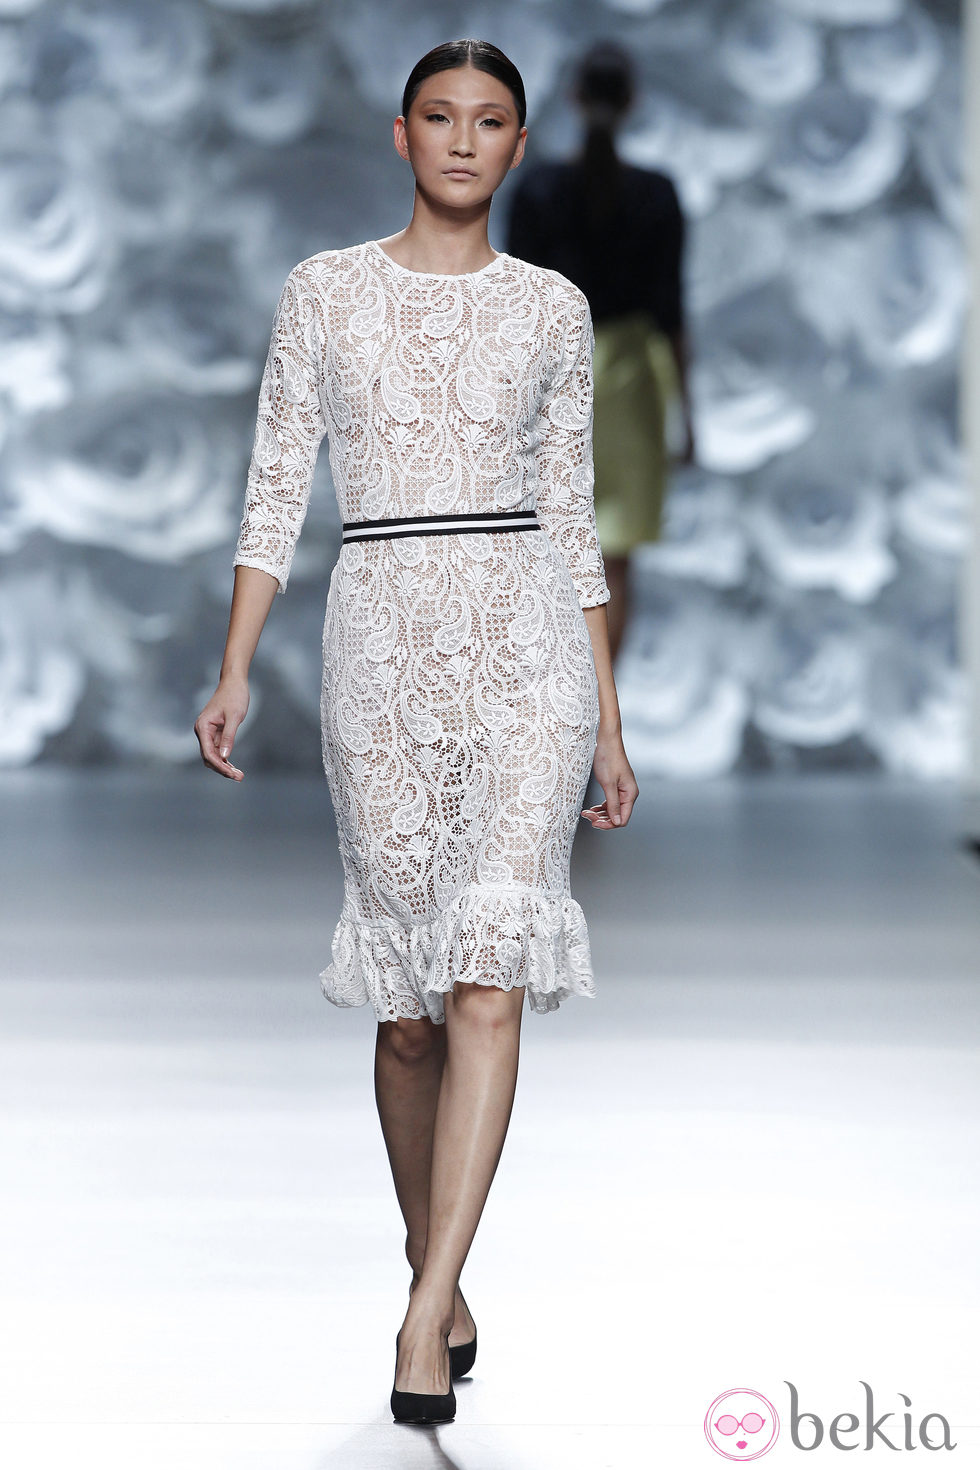 Vestido blanco de encaje de la colección primavera/verano 2014 de Juana Martín en Madrid Fashion Week